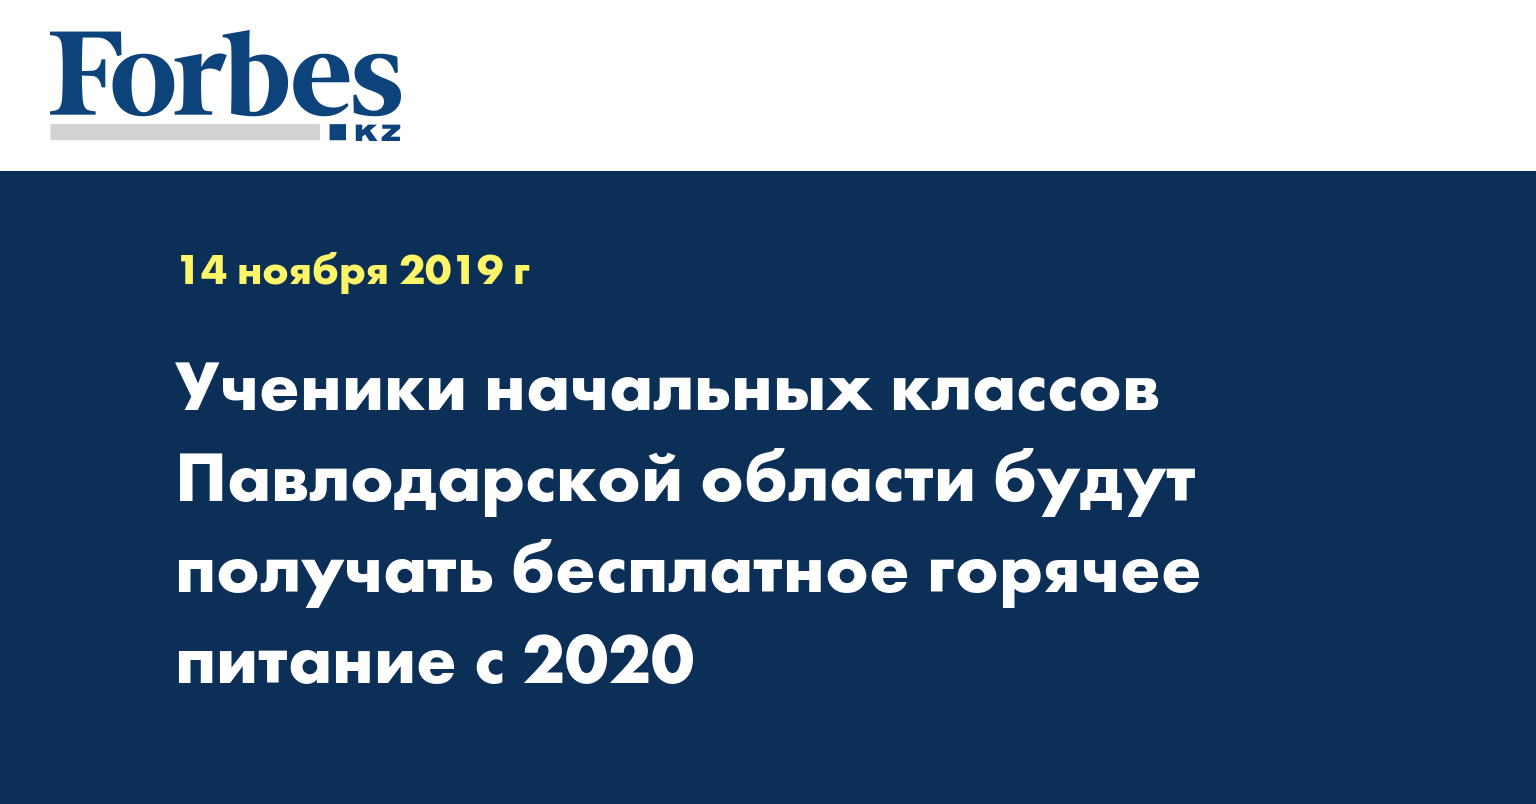 Ученики начальных классов Павлодарской области будут получать бесплатное горячее питание с 2020